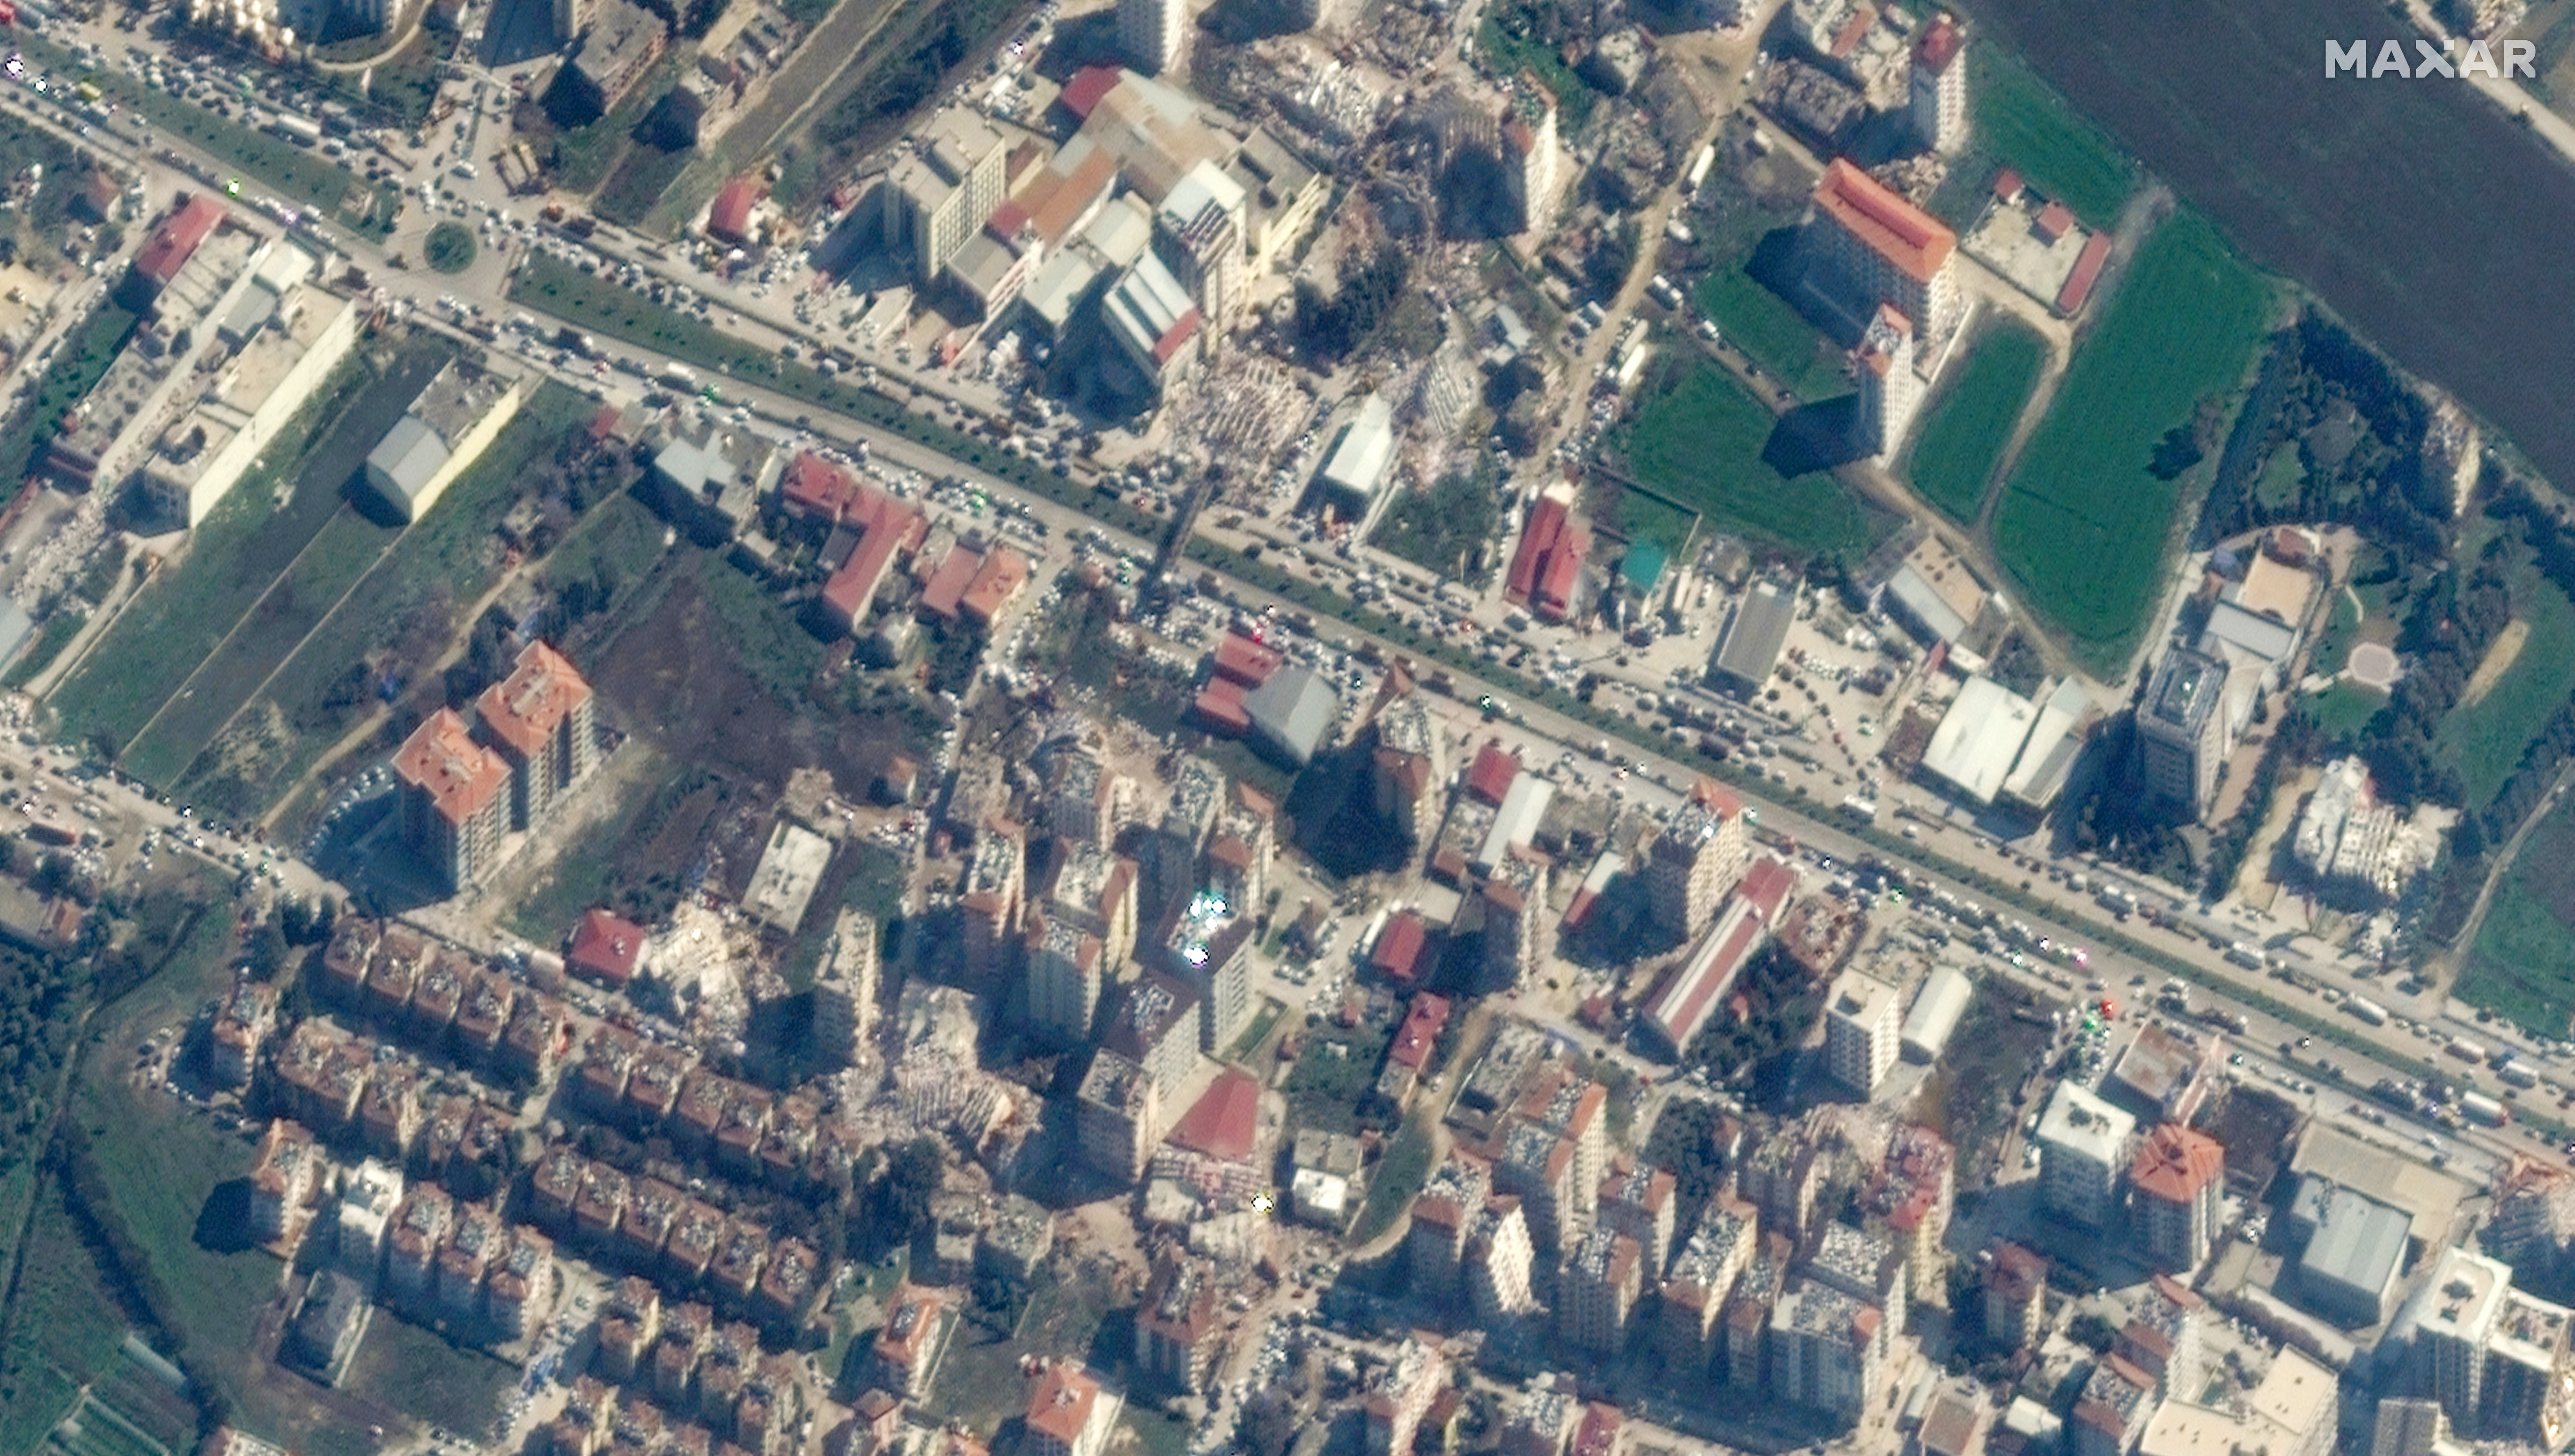 Varias imágenes satelitales lograron captar cómo quedaron los edificios derrumbados después del terremoto en Turquía, el 8 de febrero de 2023. Imagen satelital ?2023 Maxar Technologies/Folleto a través de REUTERS 